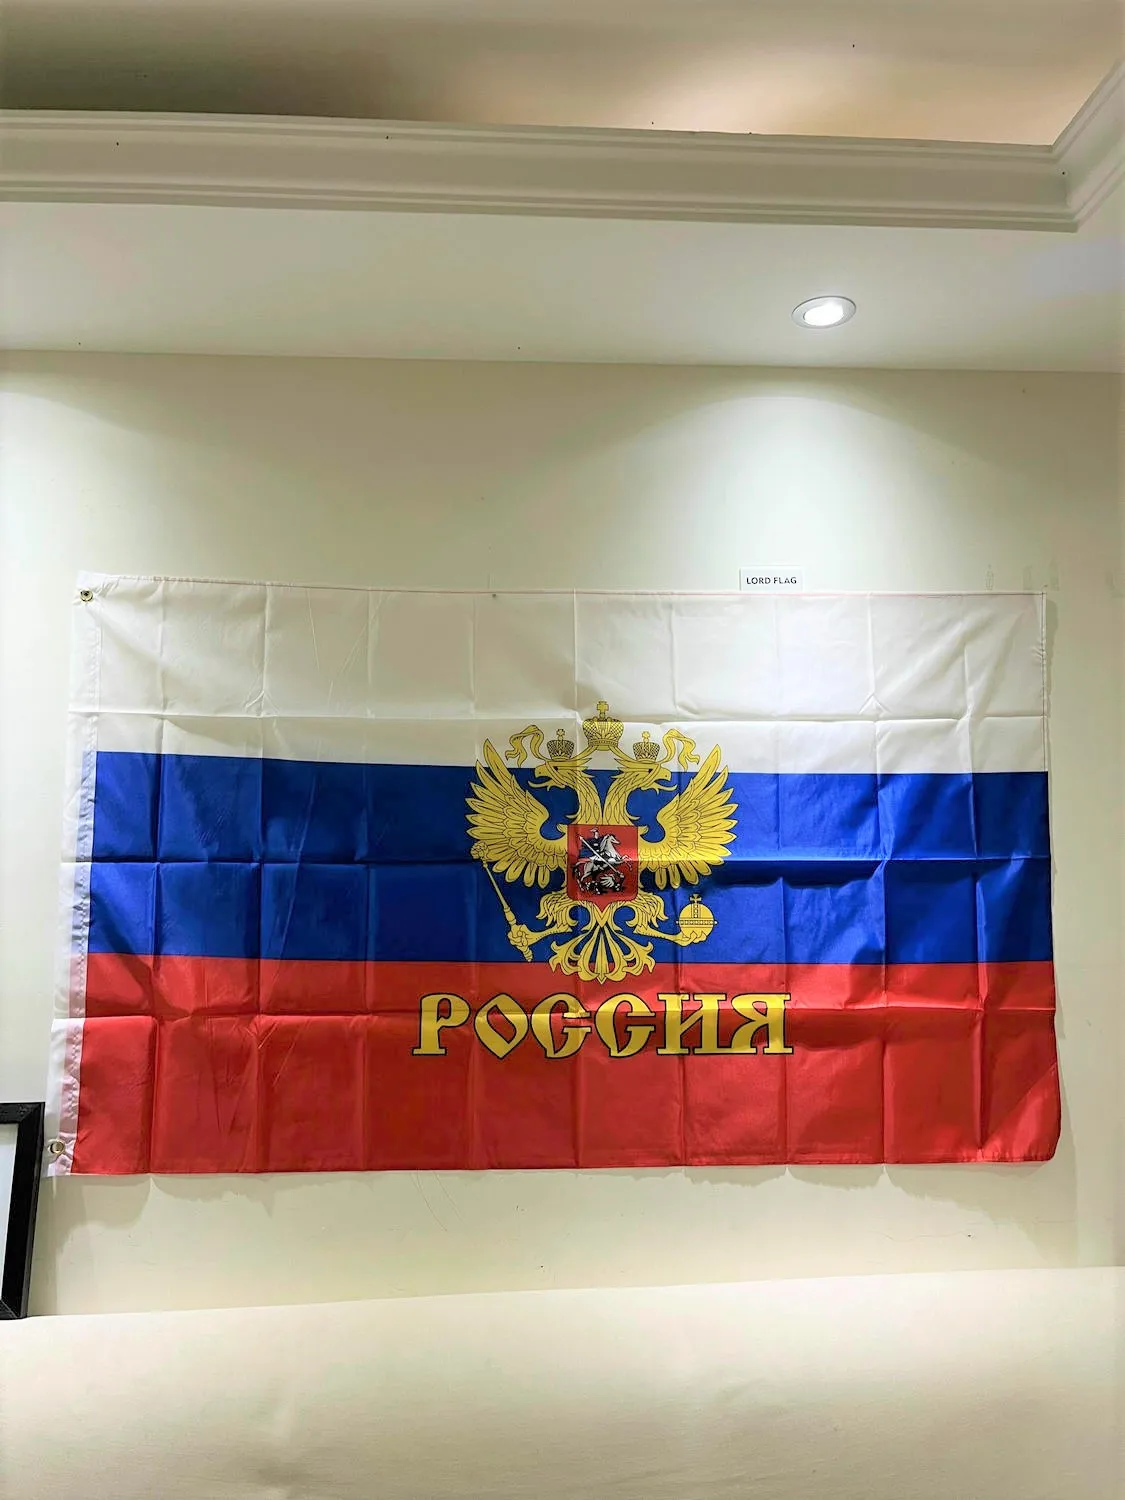 Federação russa de bandeira